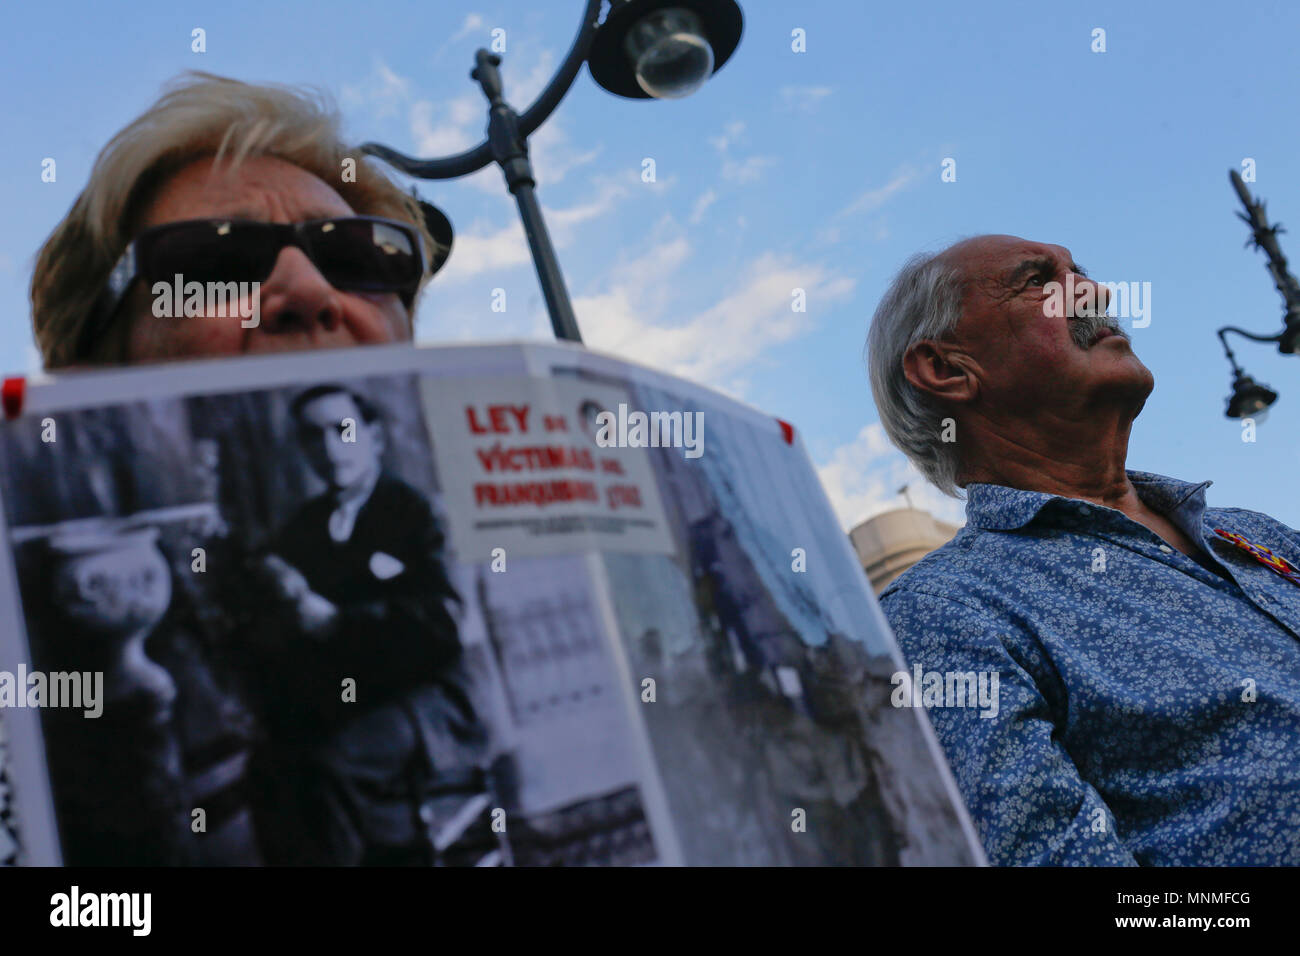 Un manifestant portant une photographie sur sa poitrine se manifeste à la Puerta del Sol dans le centre de Madrid, en solidarité avec ceux qui ont disparu par le régime de Franco. Les manifestants se sont rassemblés dans le centre de Madrid dans un rallye du souvenir pour ceux qui ont perdu la vie sous la dictature de Franco. Banque D'Images